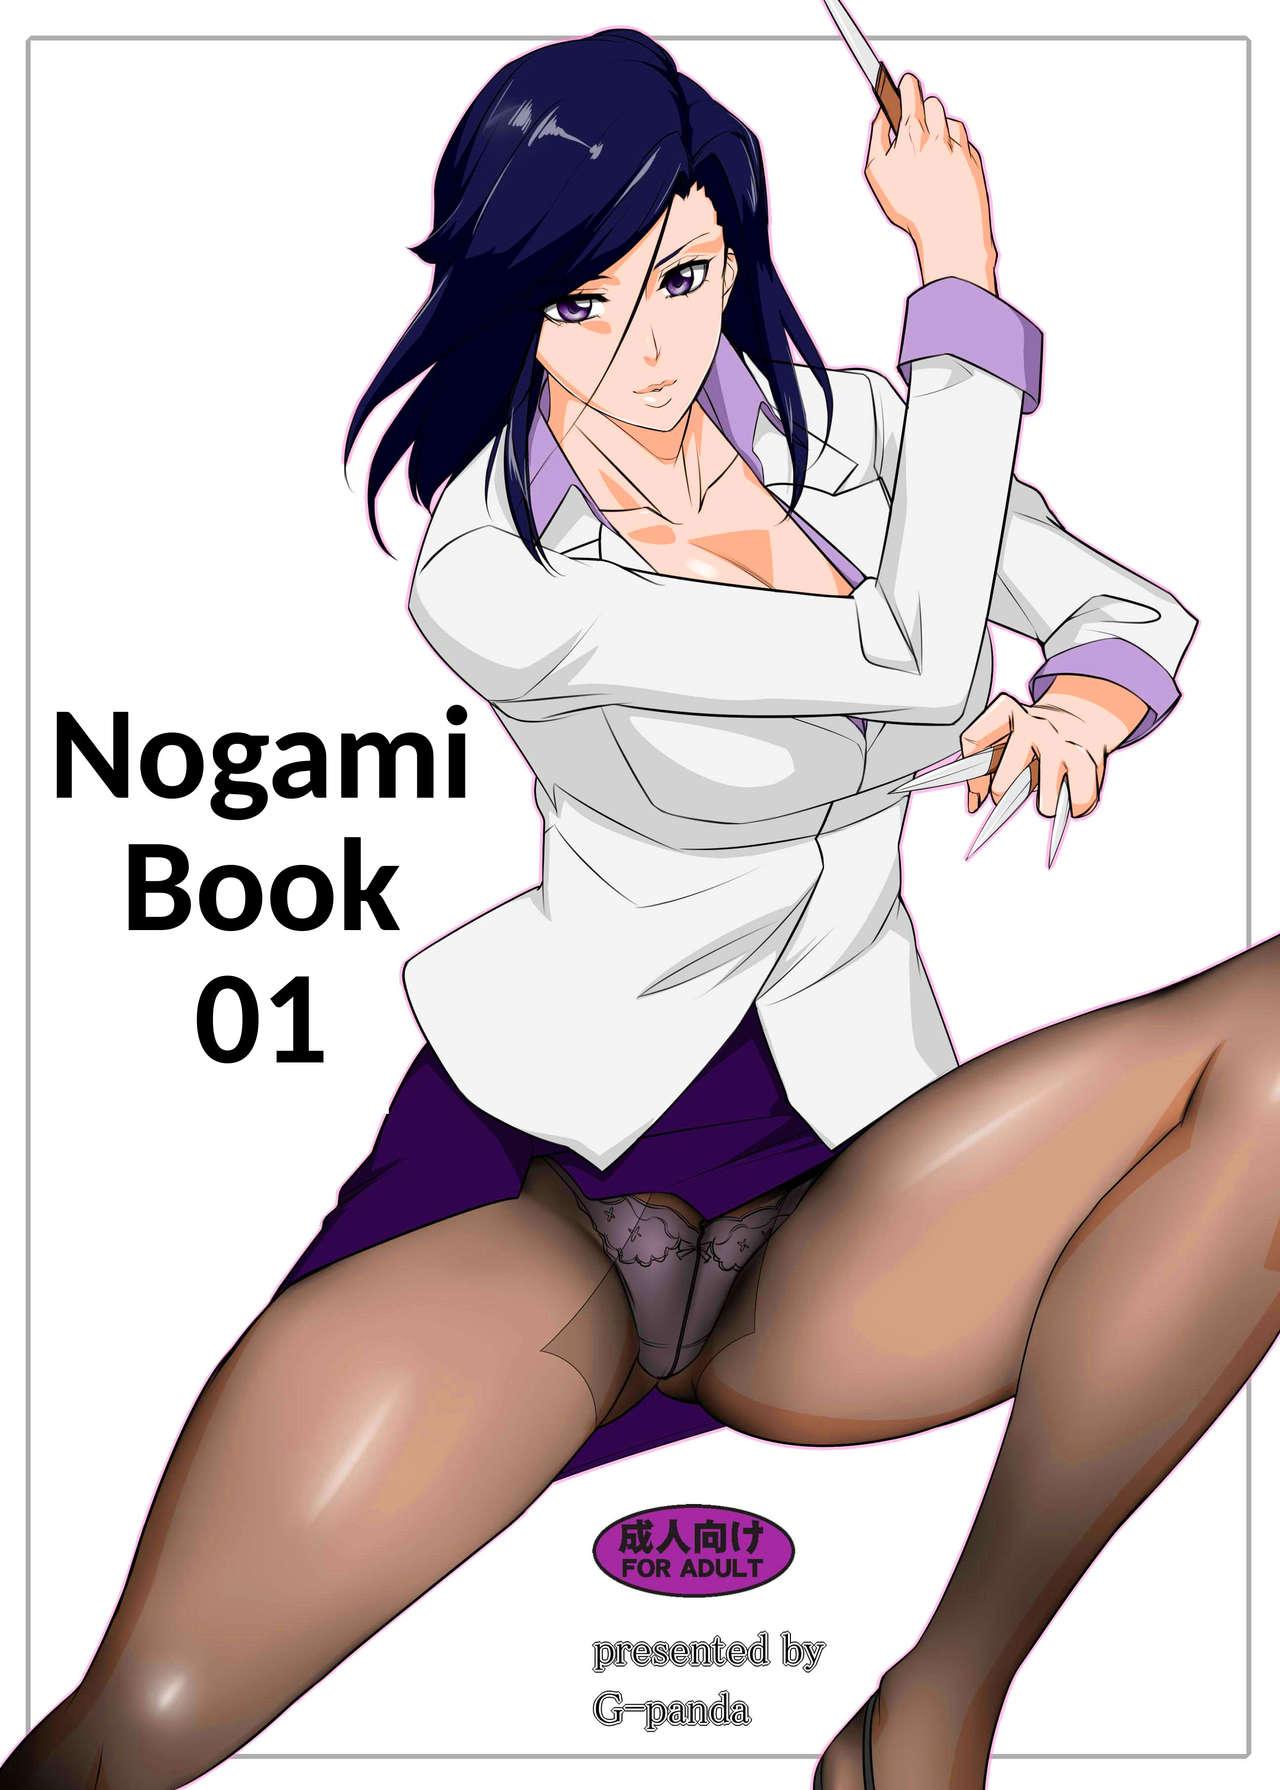 Nogami Bon 01 - Nogami Book 01 1